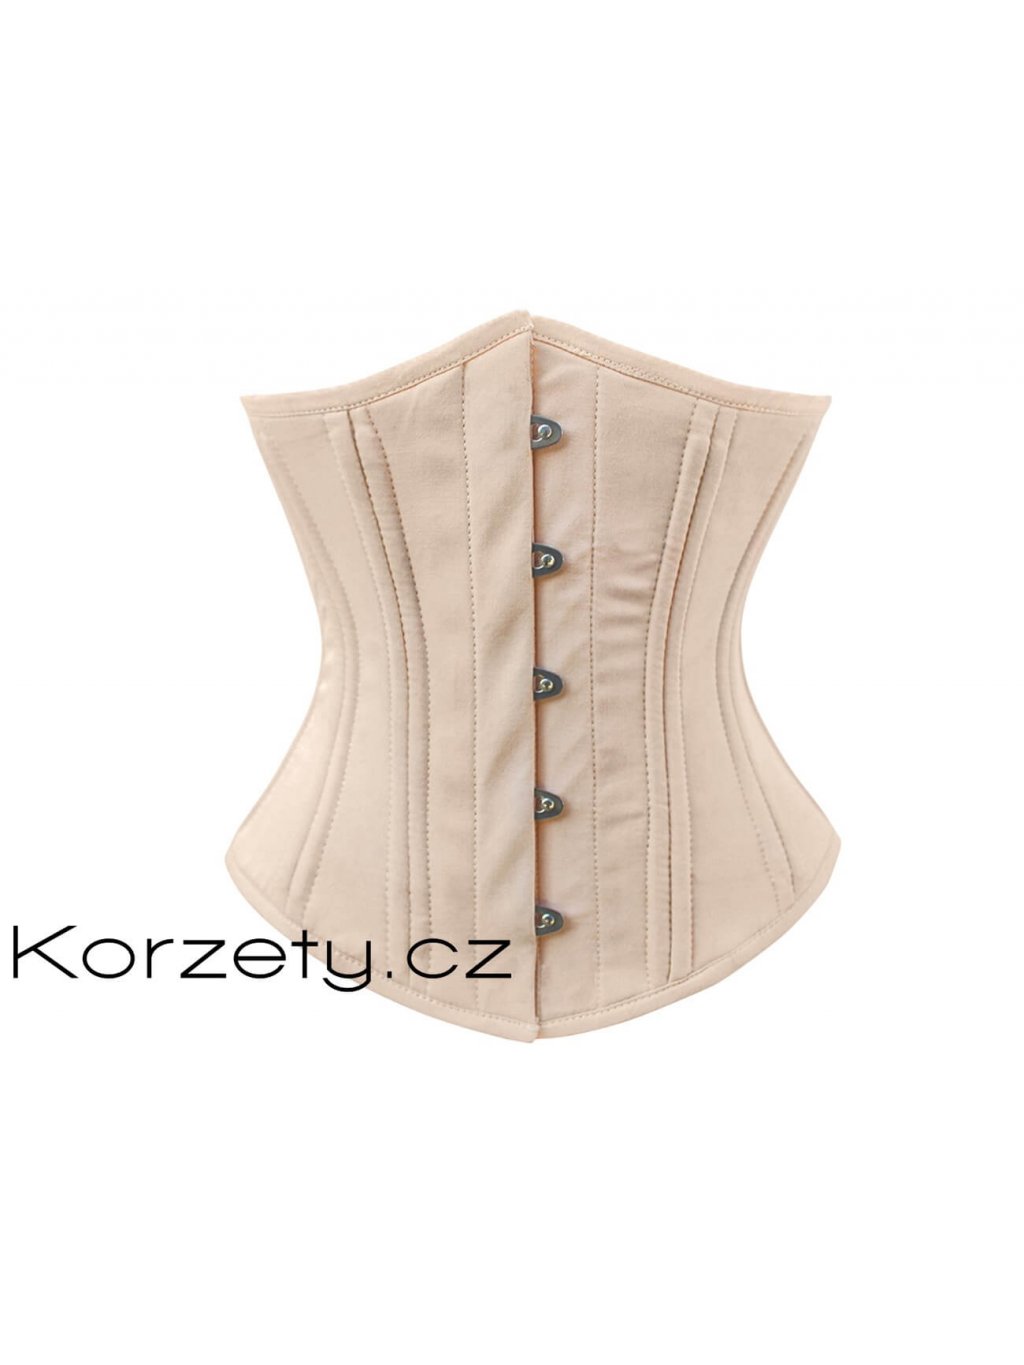 Korzet - Extra stahovací korzet pod prsa na běžné nošení v béžové barvě z  bavlny (běžná délka, zdvojené ocelové kostice, bavlněná podšívka) 